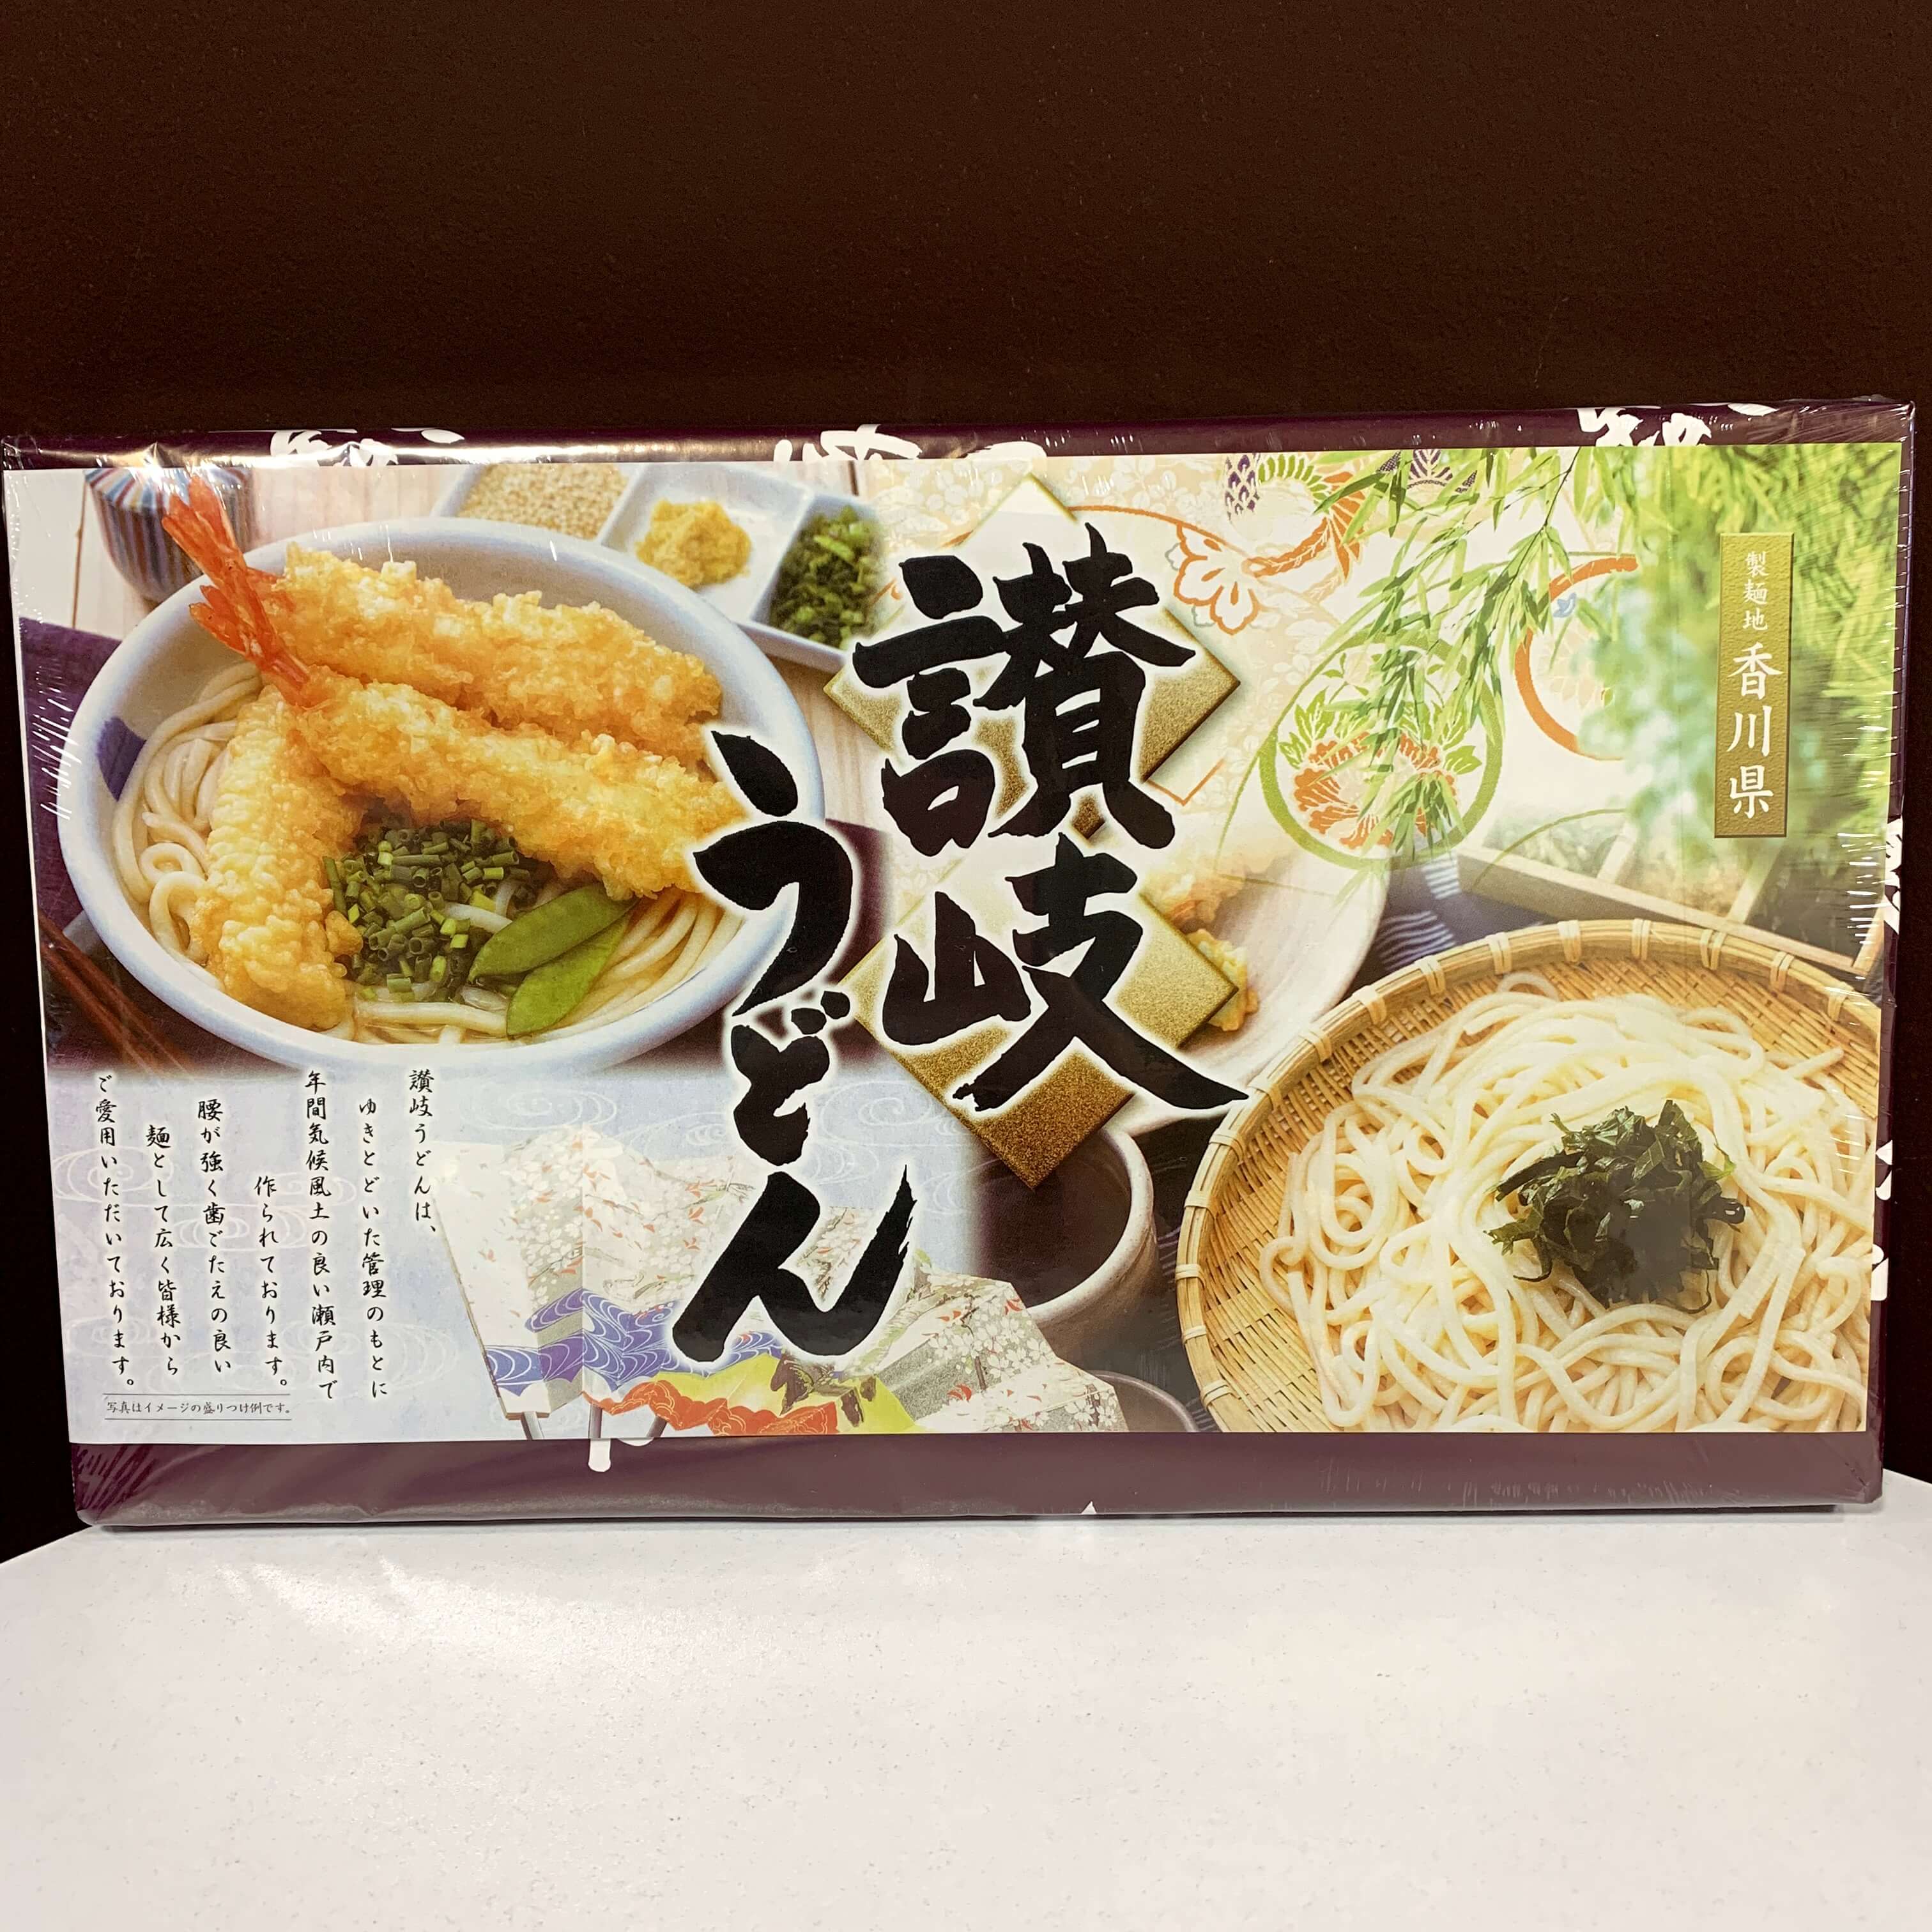 讃岐そうめん」 製麺地香川県 900g (50g×18束) × 14箱 - その他 加工食品